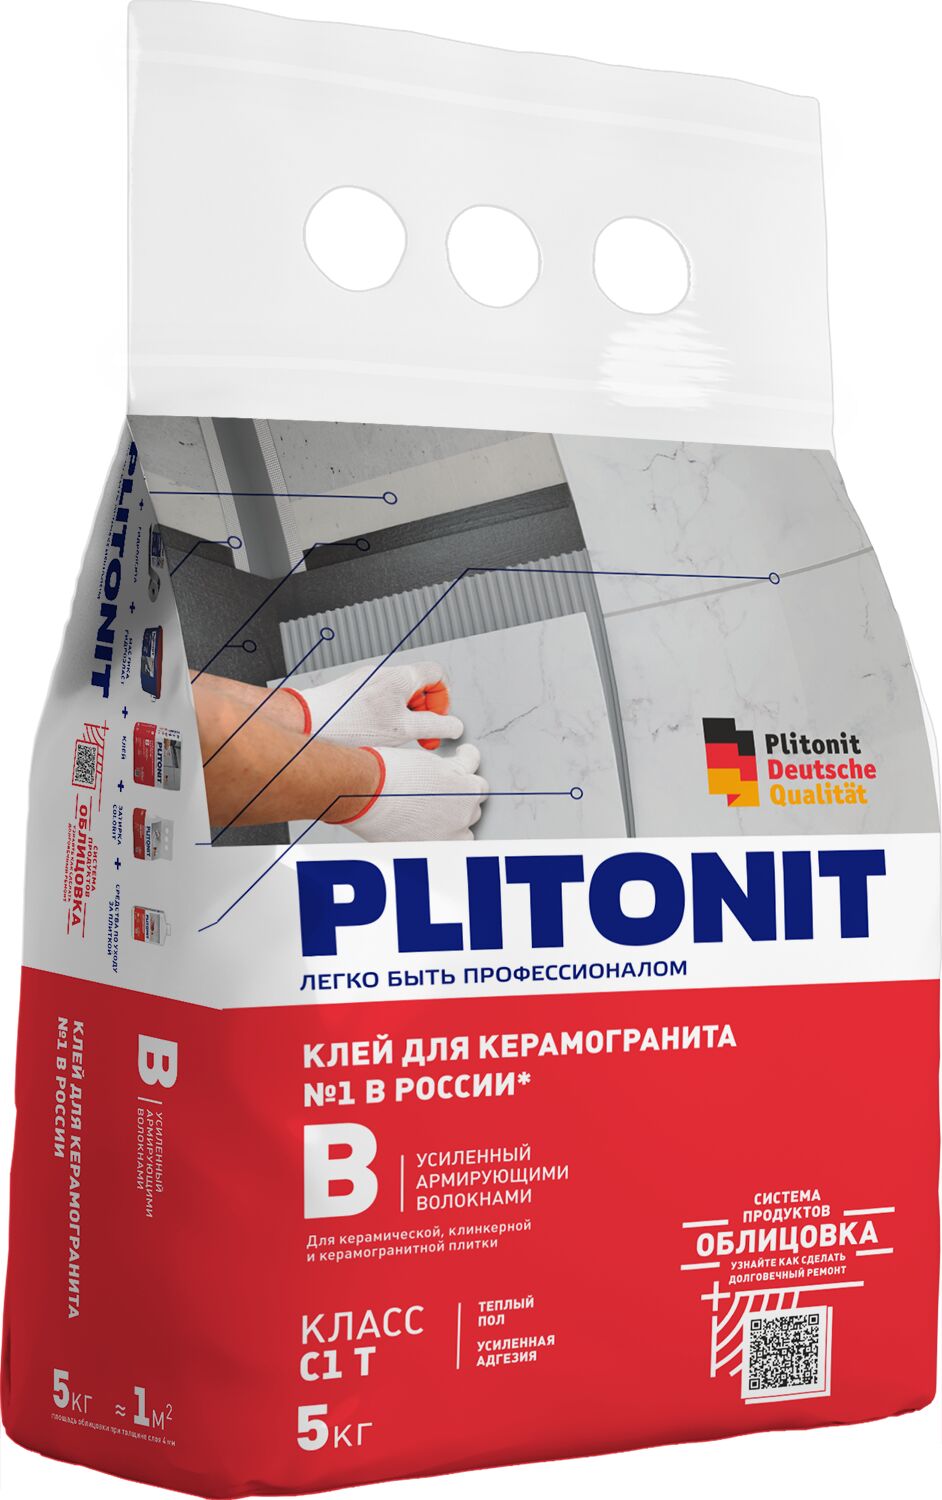 PLITONIT В усиленный армирующими волокнами -5 для керамогранитной и керамической плитки, класс С1Т